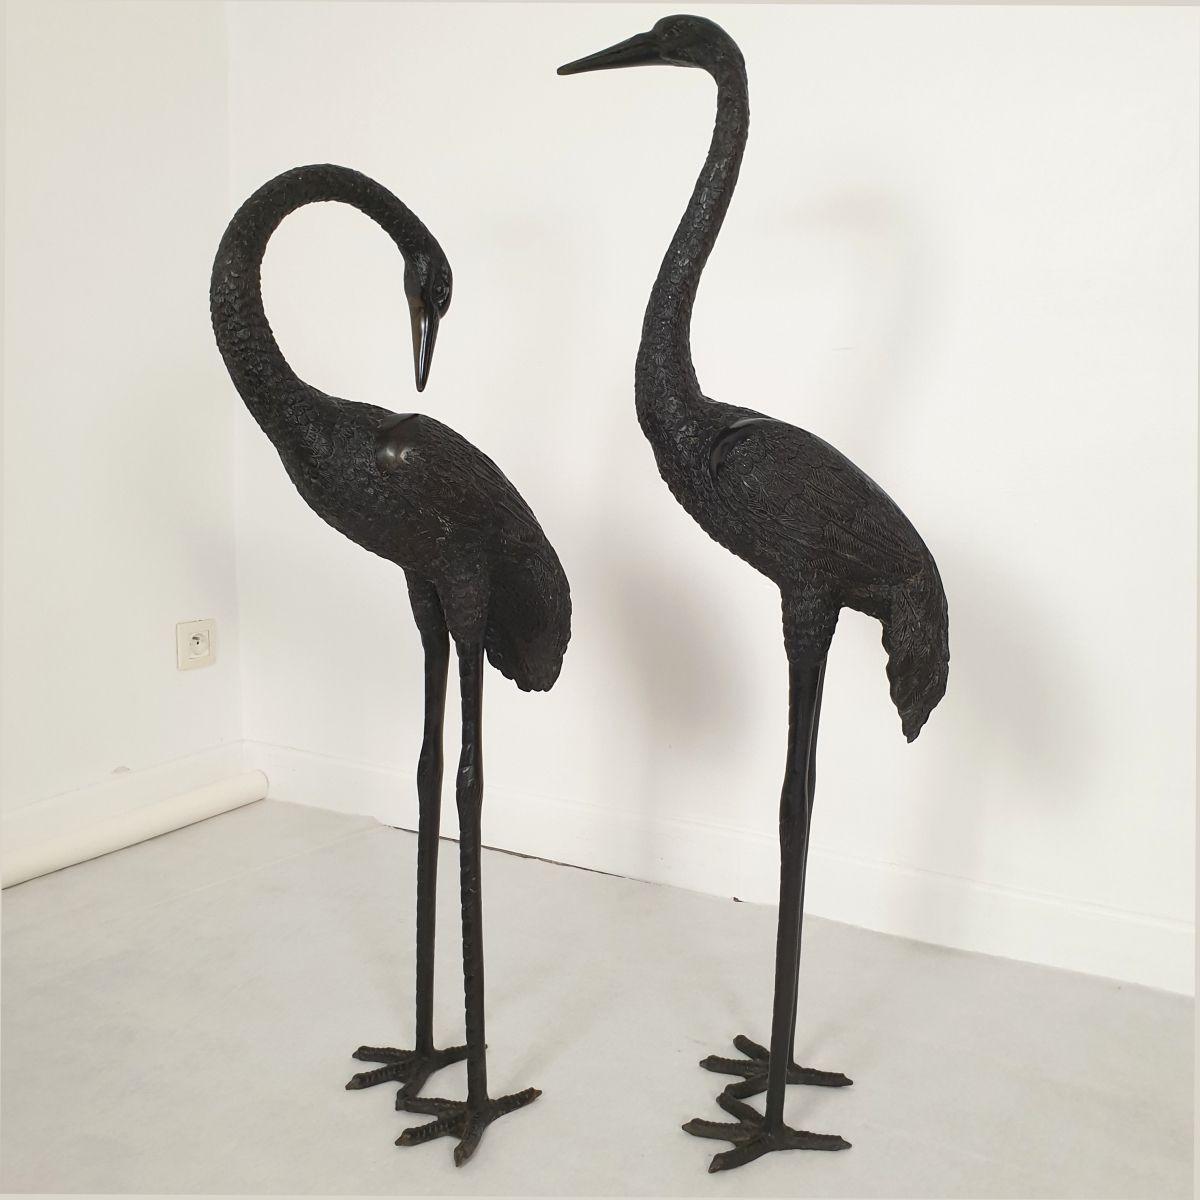 Satz von zwei großen Kranichvogel-Skulpturen, Frankreich, ca. 1950er Jahre oder früher.
Die Vogelskulpturen im Hollywood-Regency-Stil sind in Lebensgröße.
Sie können sowohl im Innen- als auch im Außenbereich als Kunstskulpturen aufgestellt